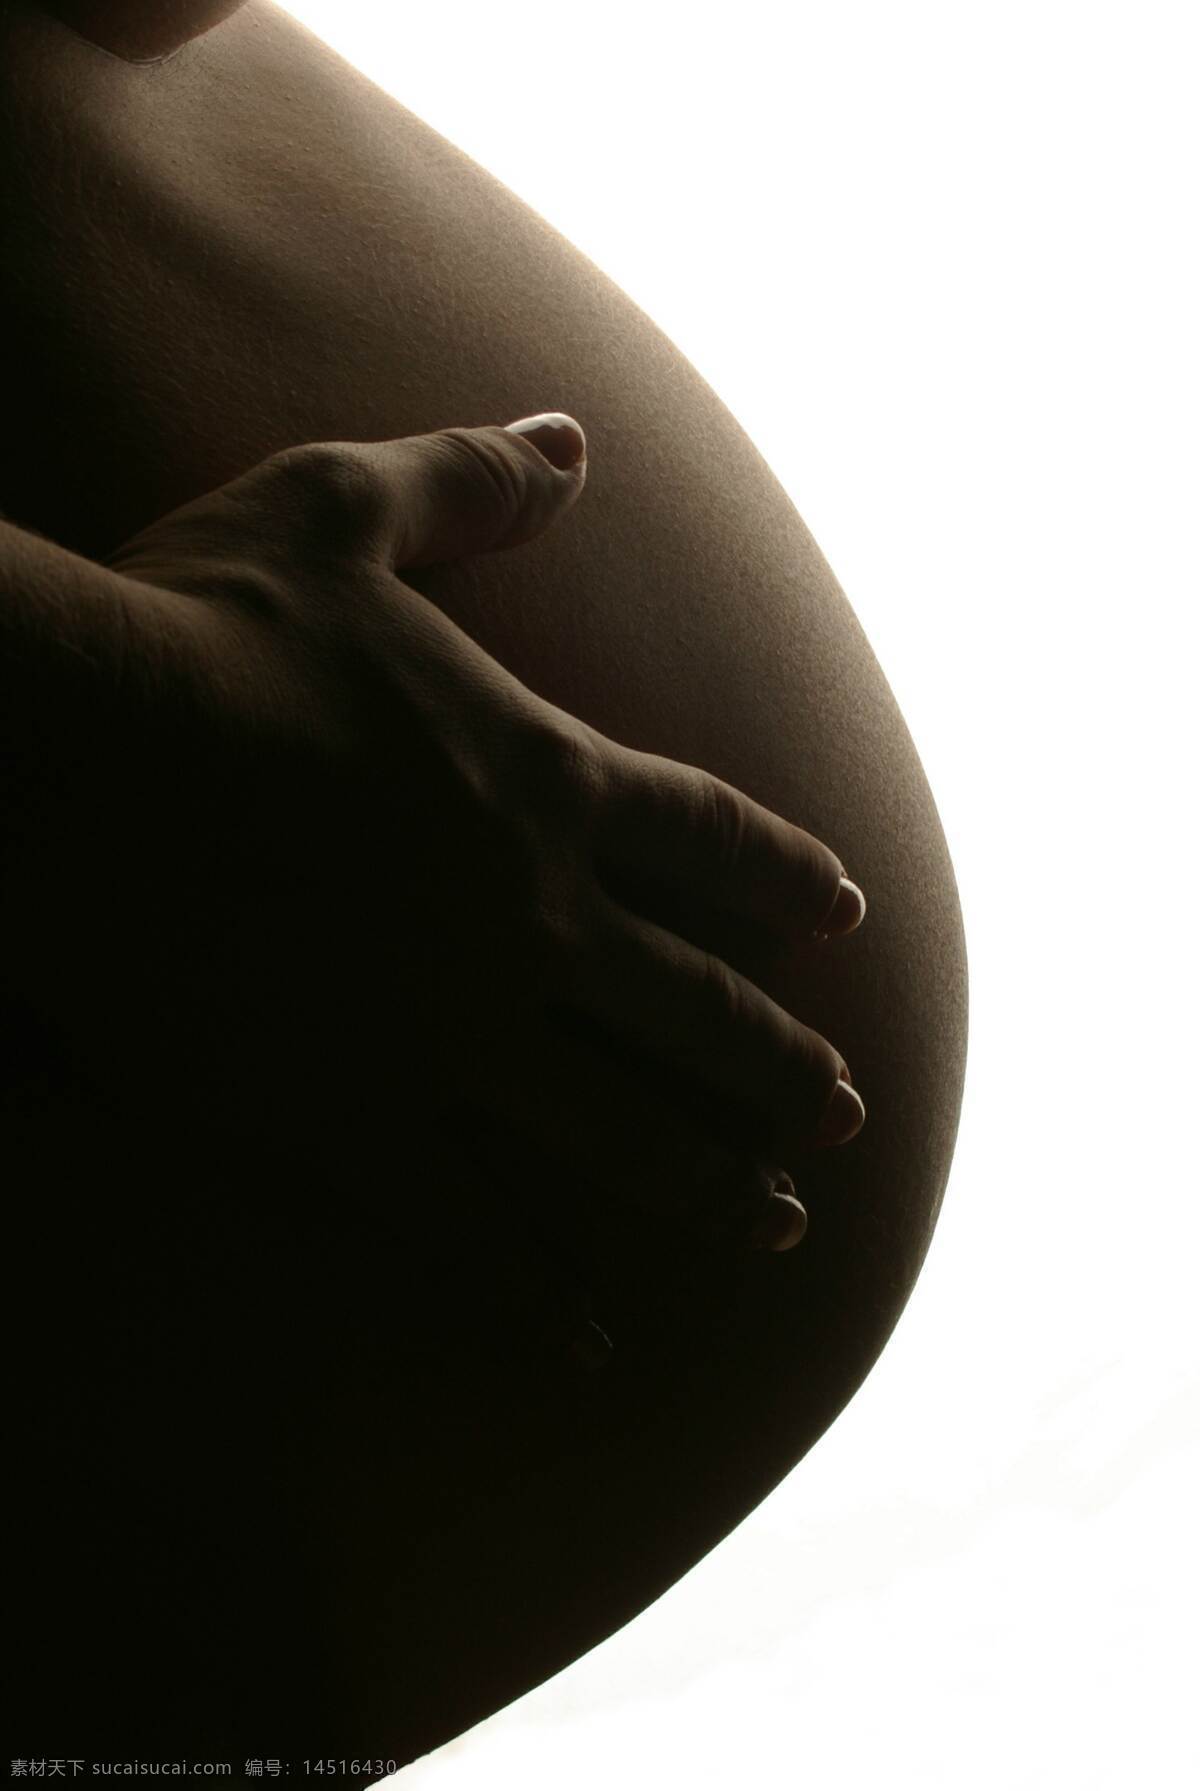 黑白孕妇 黑白 孕妇 大肚子 怀孕 剪影 母亲节 人物图库 女性女人